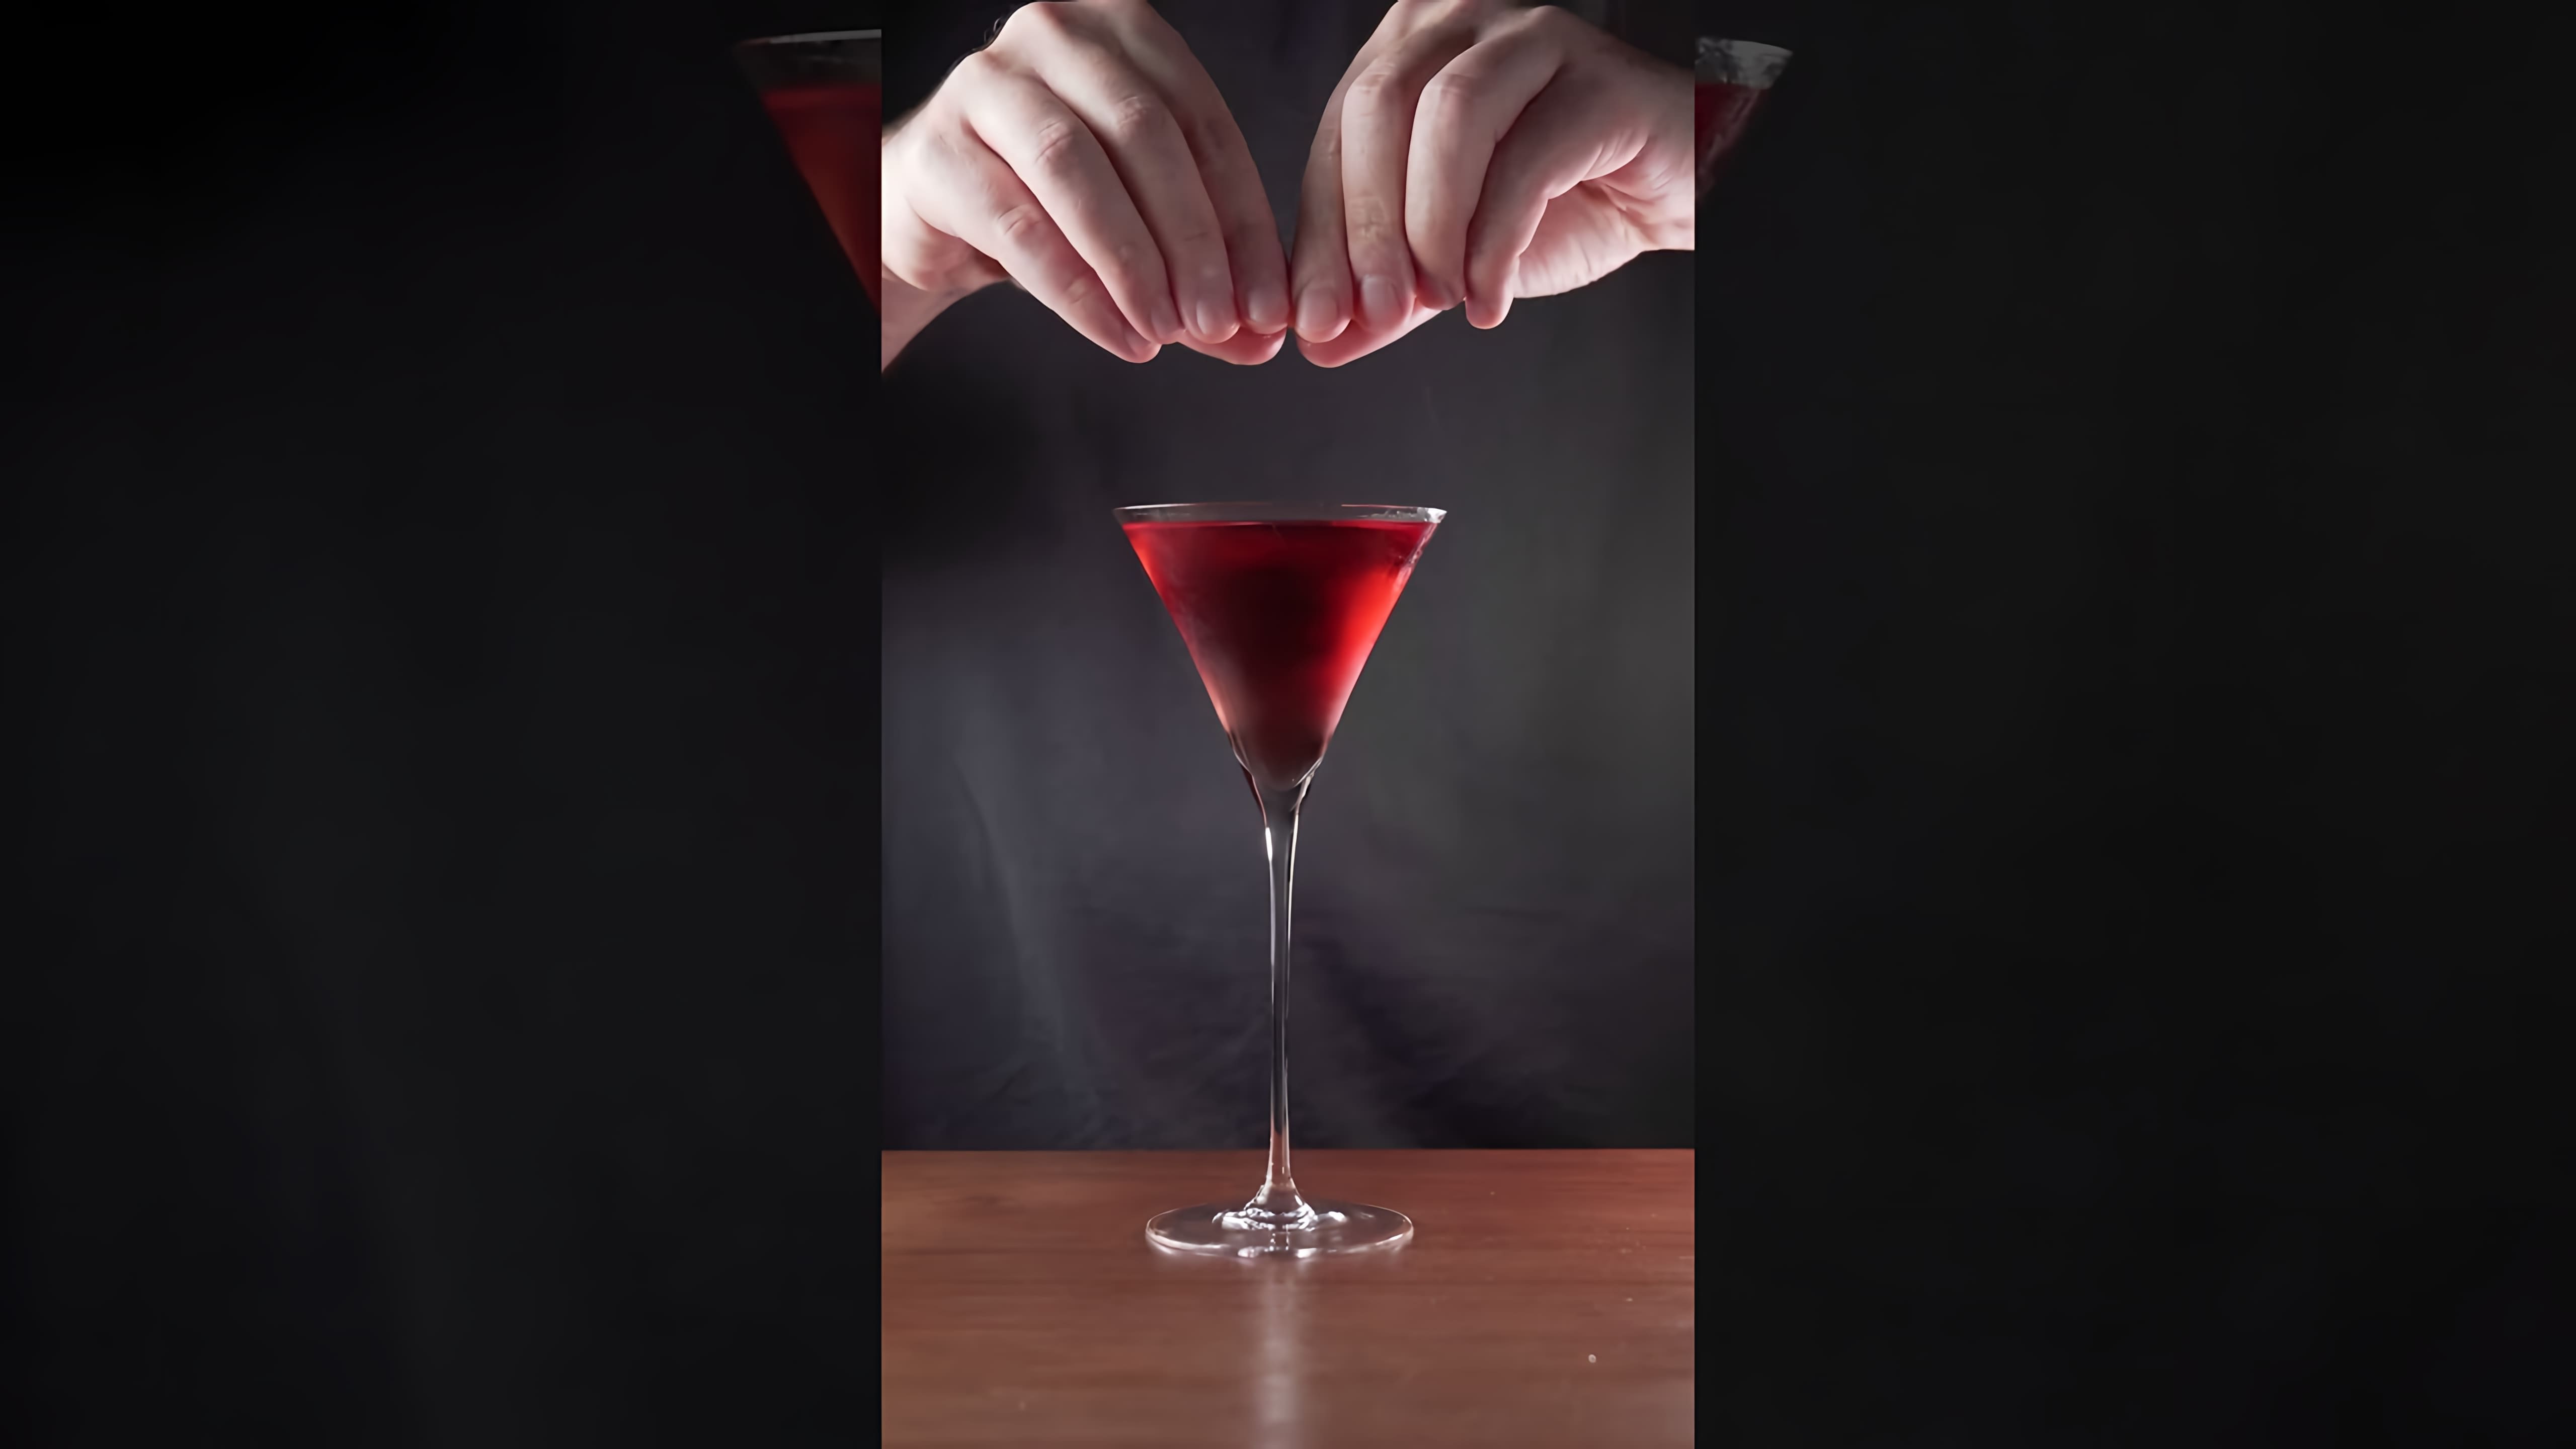 "Коктейль ПАРИЖАНИН | PARISIAN смородина и джин!" - это видео-ролик, который демонстрирует процесс приготовления коктейля с использованием джина и смородины